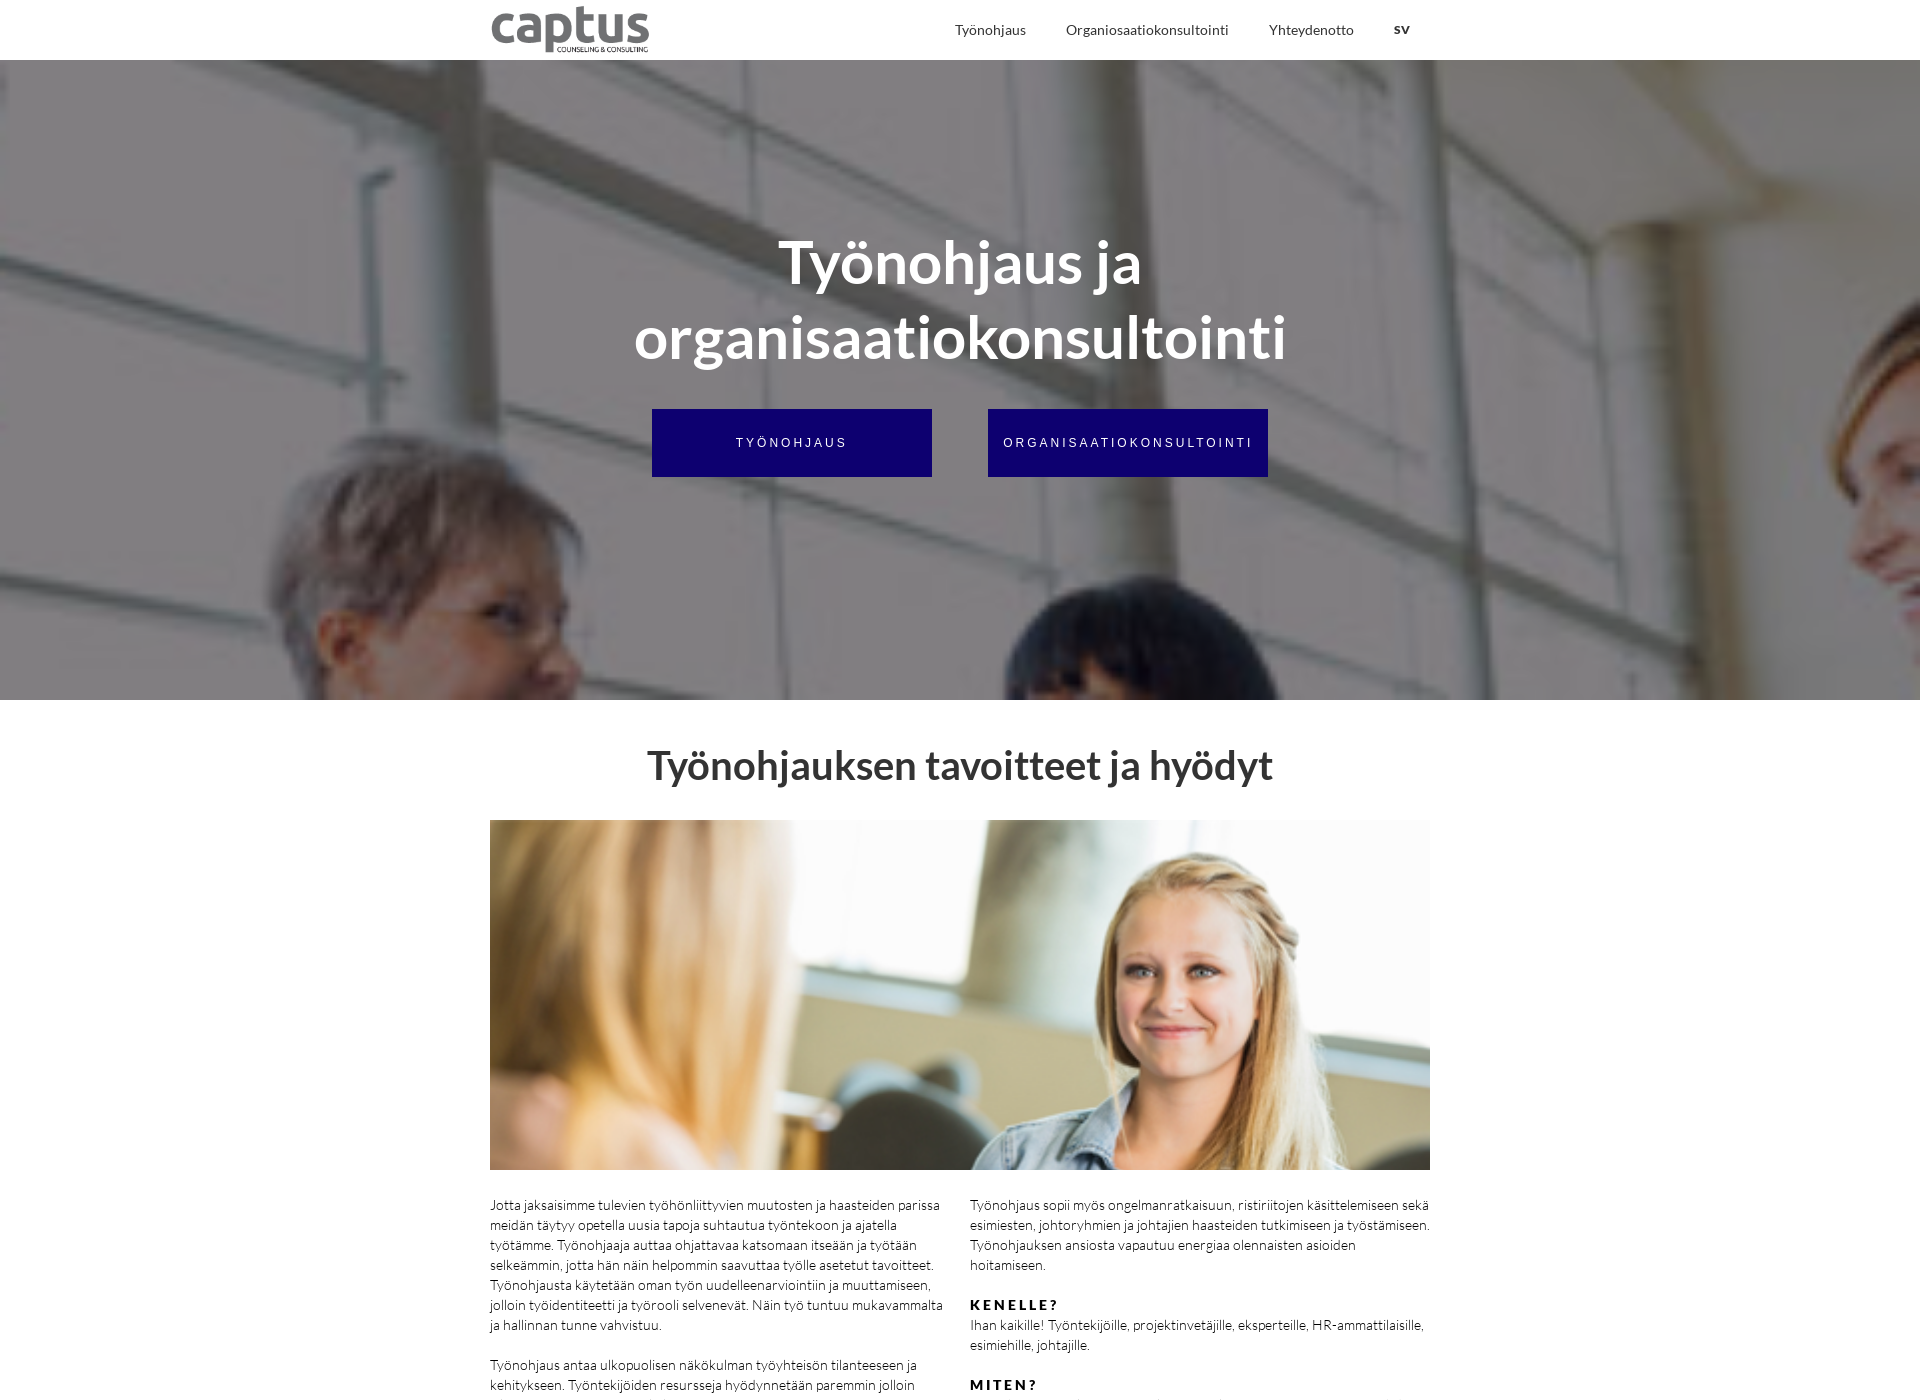 Näyttökuva captus.fi